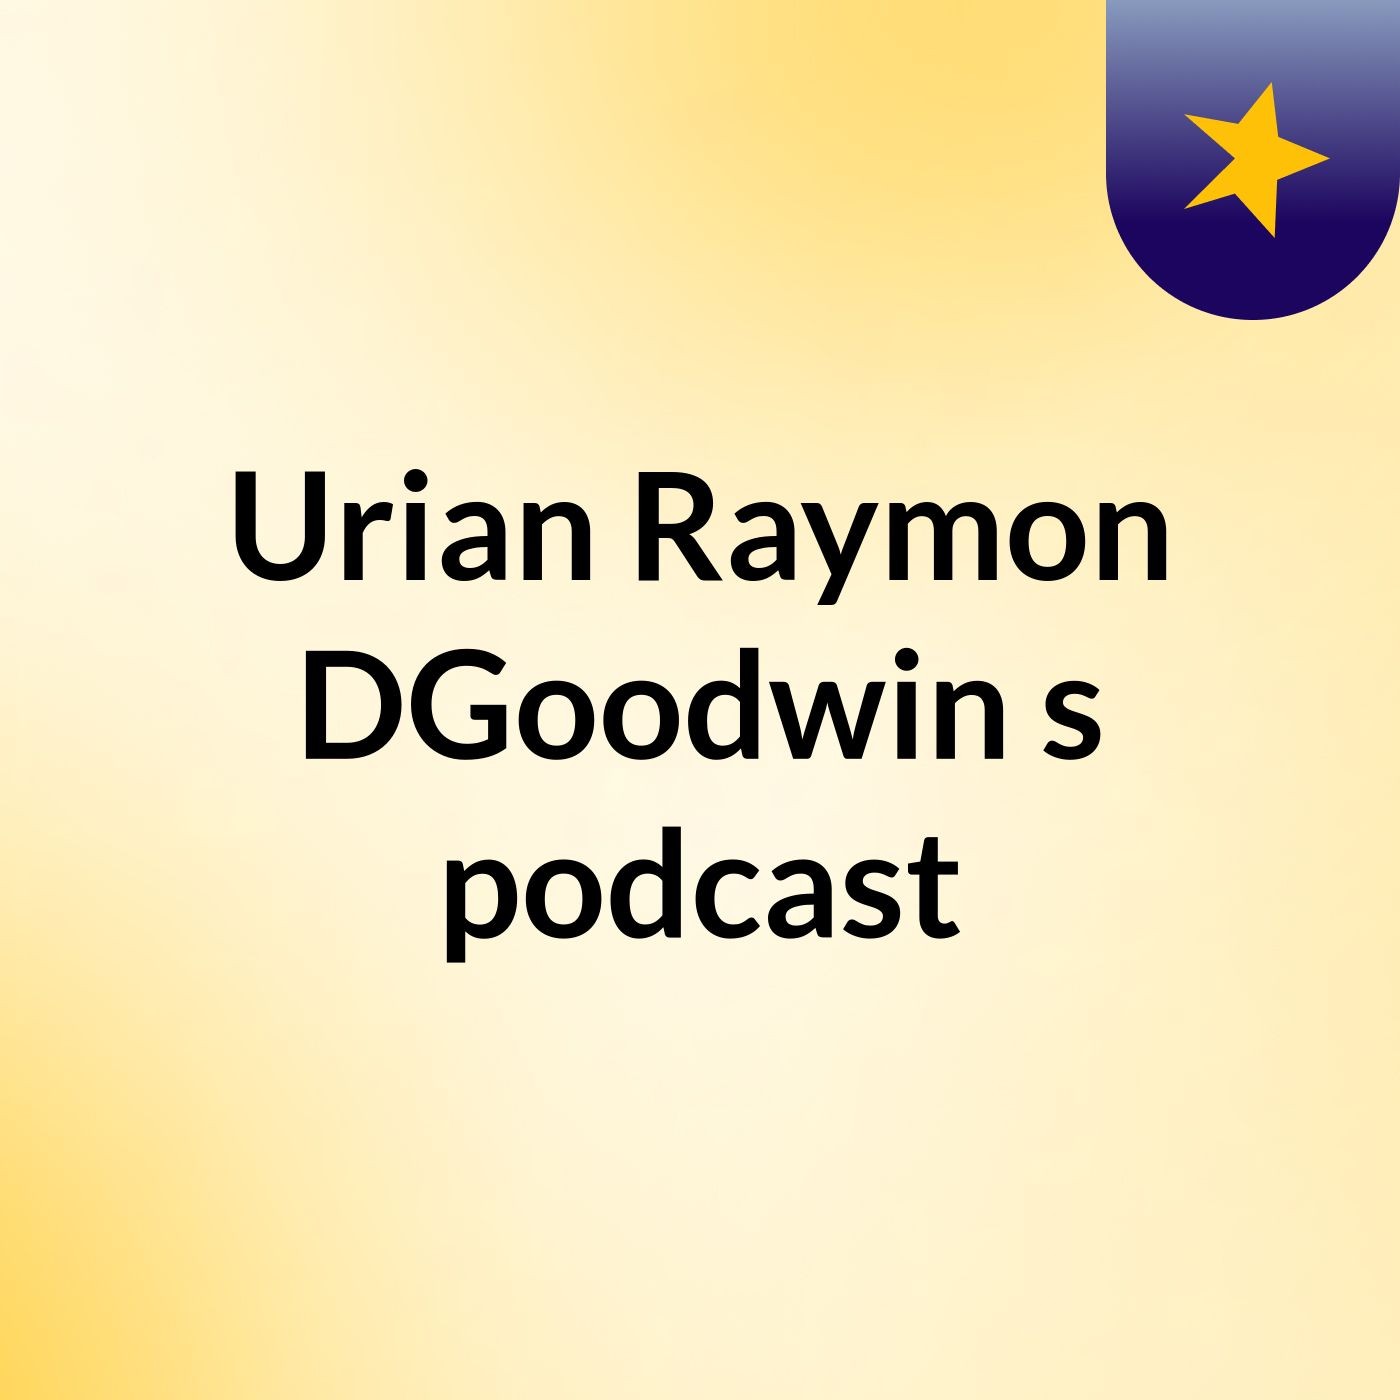 Urian Raymon DGoodwin's podcast